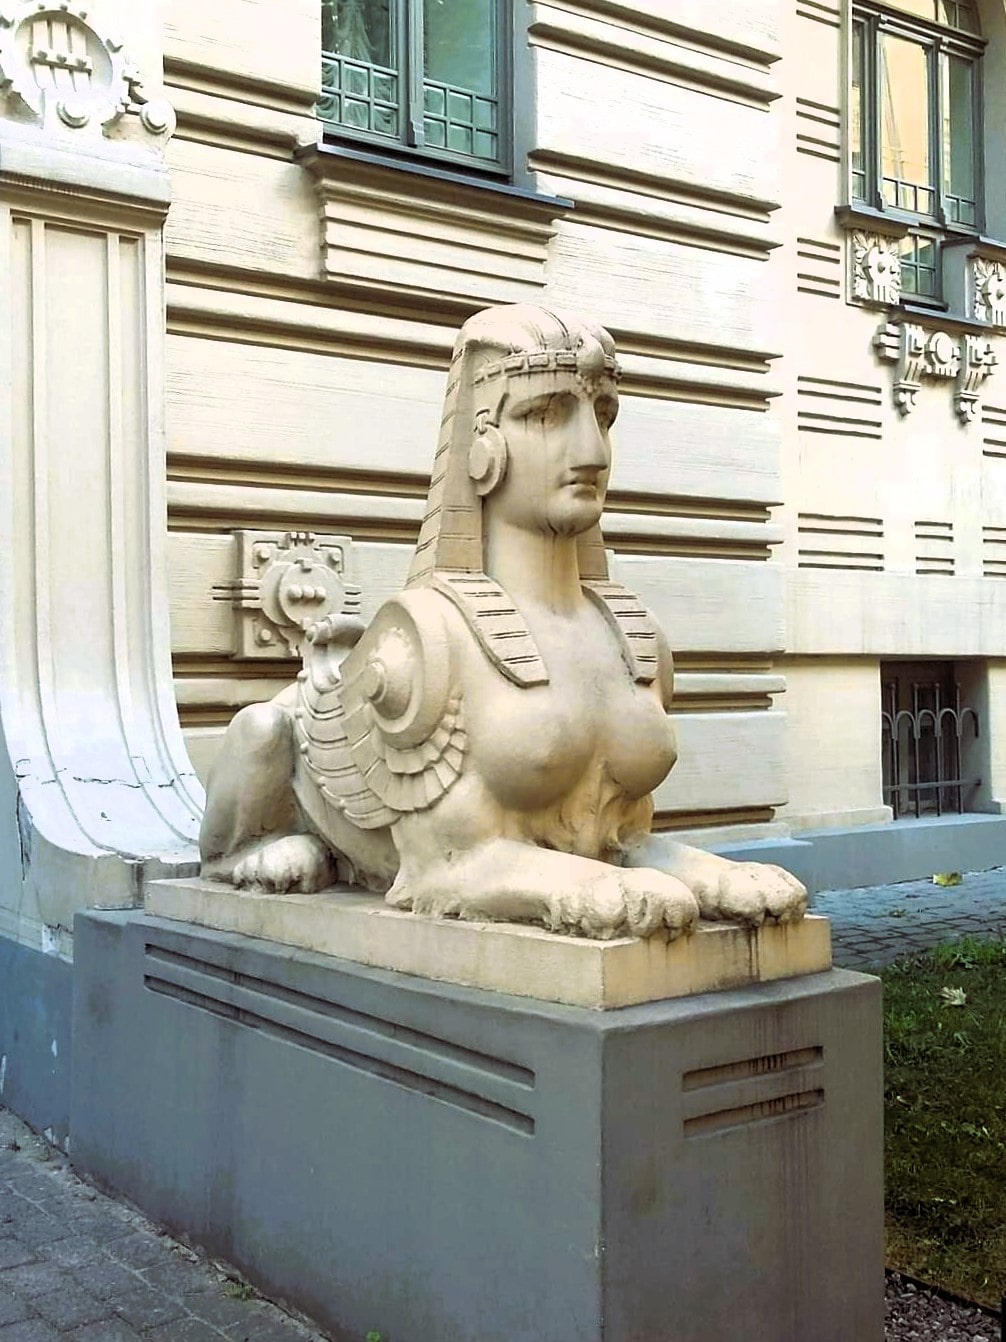 A sphinx decoration in Riga, Latvia.